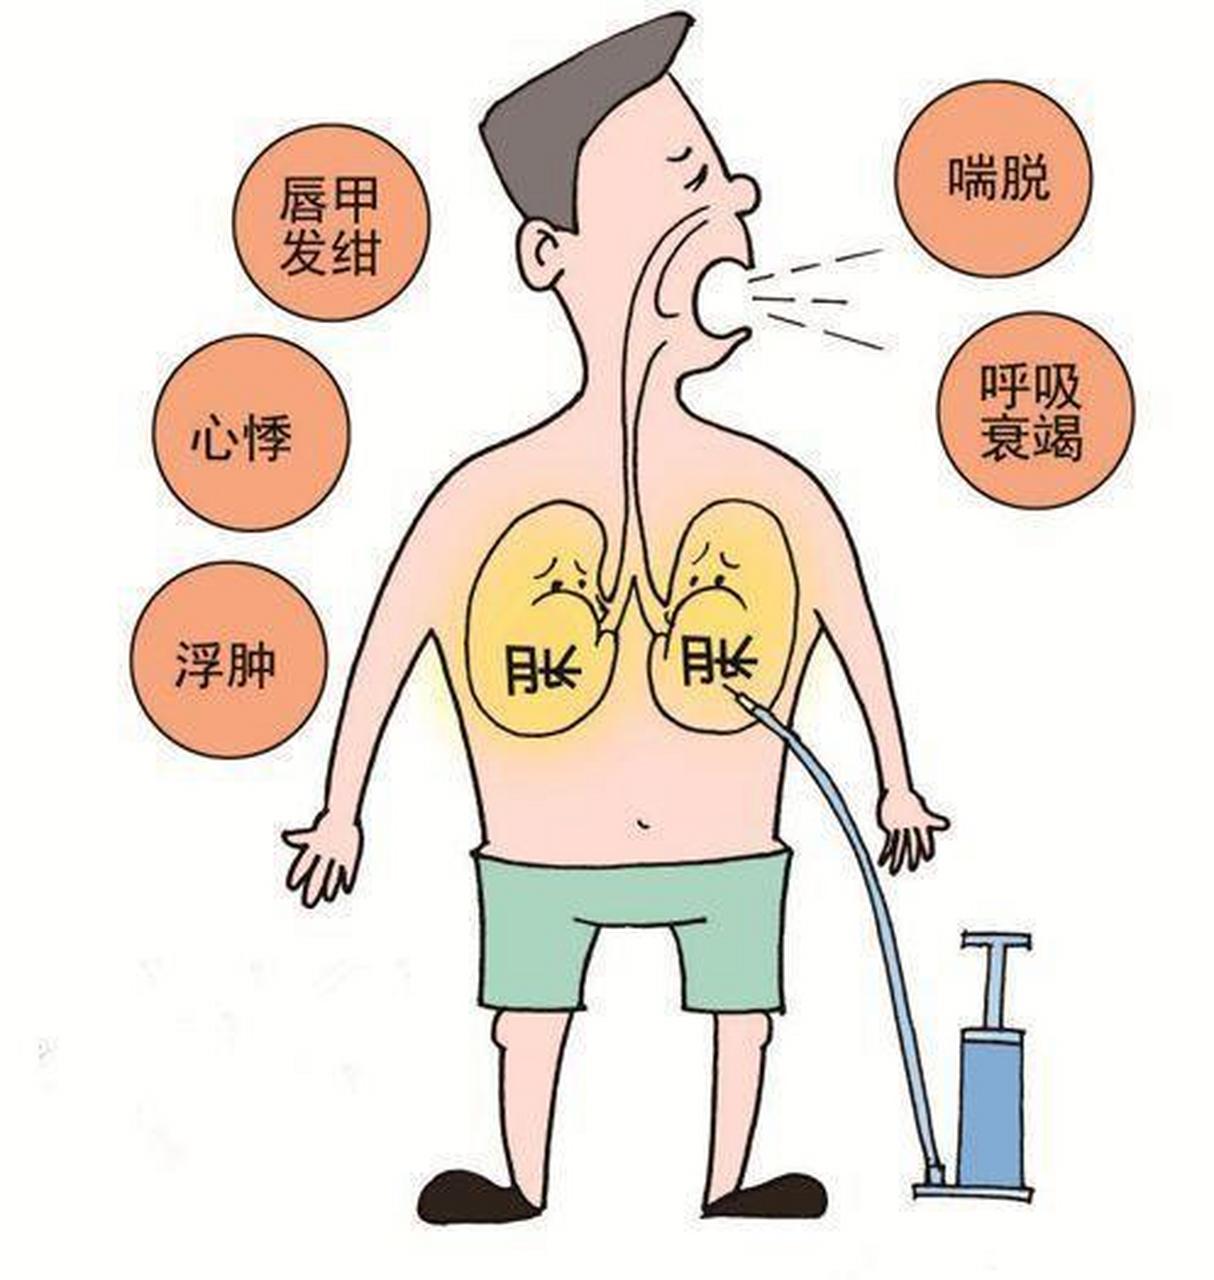 肺气肿呼吸困难,基本在于这一点,肺肾两虚 肺气肿的症状与疾病的严重